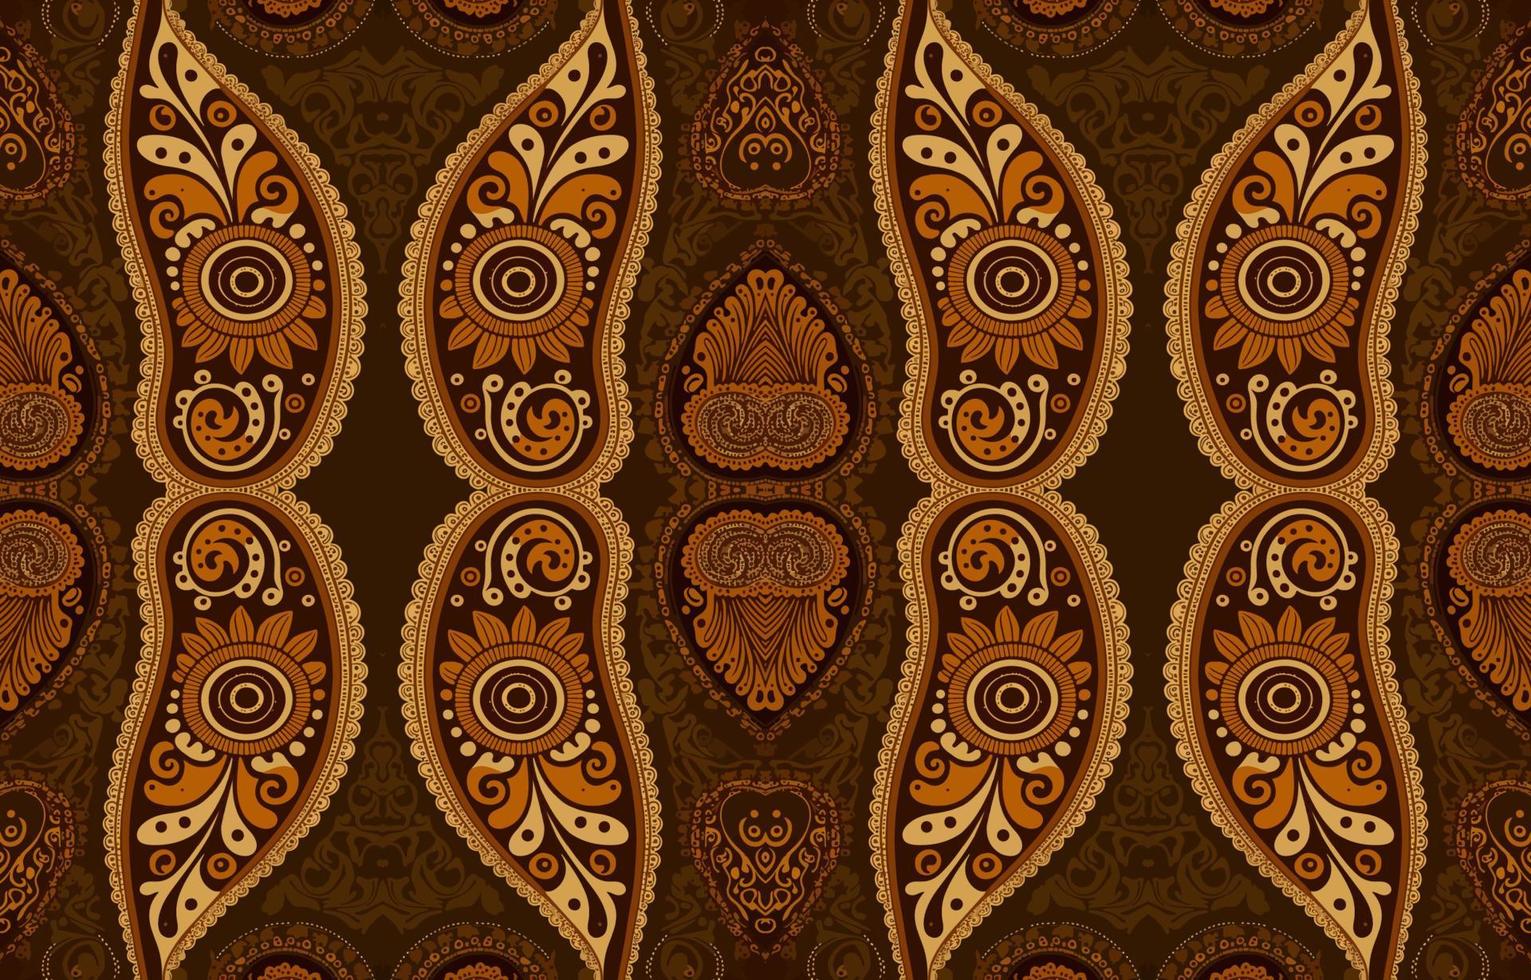 afrikansk ikat paisley sömlös mönster brun tona. abstrakt traditionell folk antik grafisk paisley linje. textur textil- vektor illustration utsmyckad elegant lyx årgång retro stil.